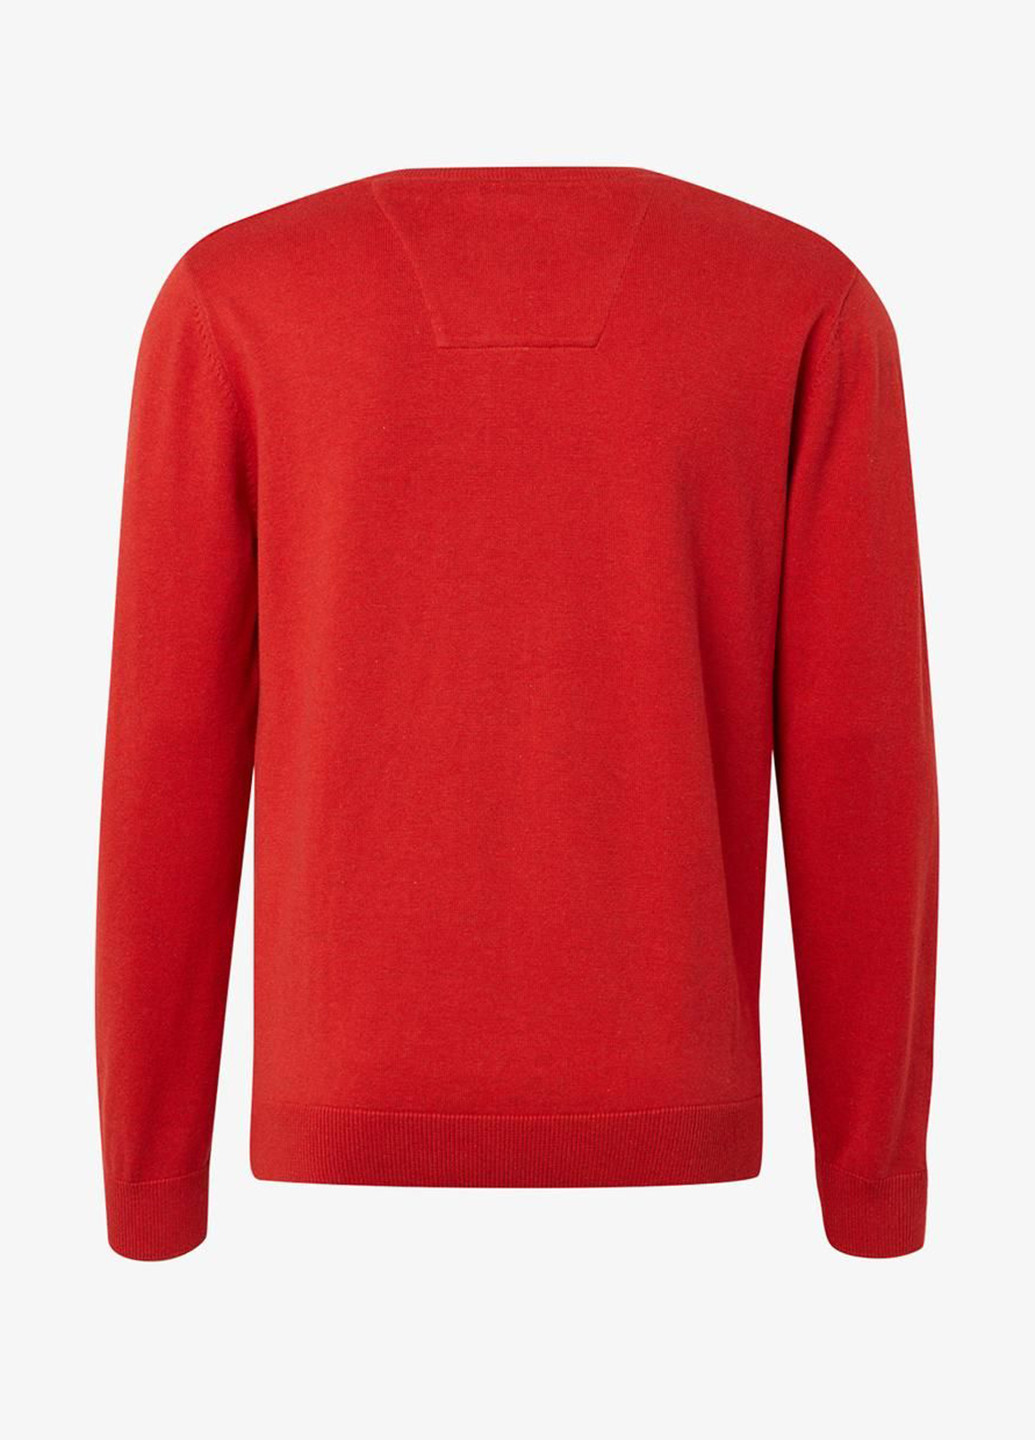 Красный демисезонный пуловер пуловер Tom Tailor